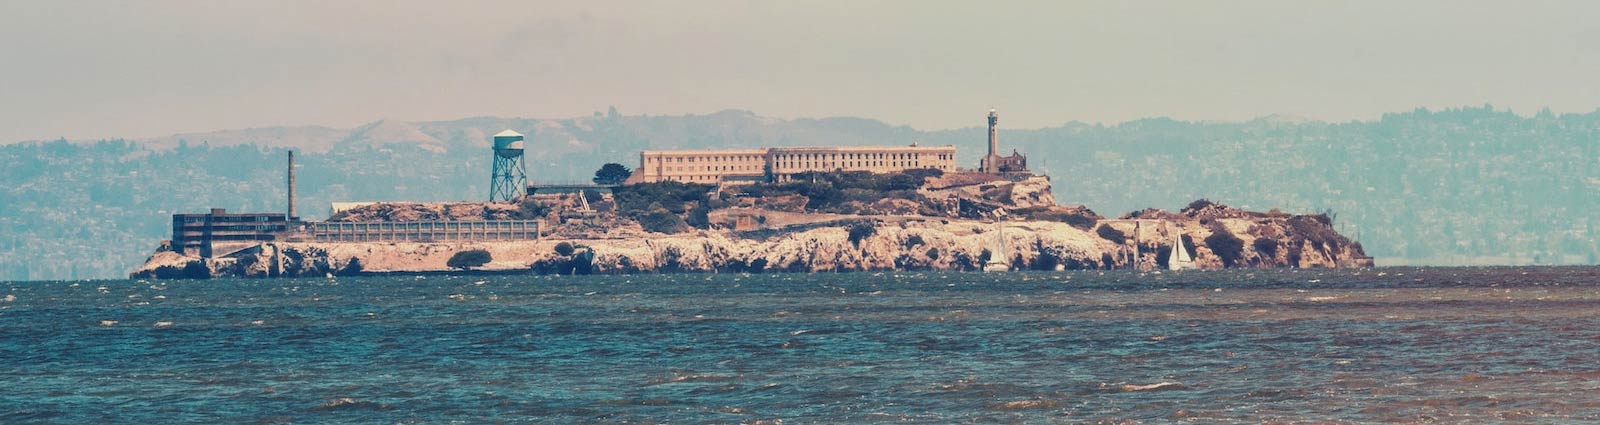 Alcatraz von der Küste aus